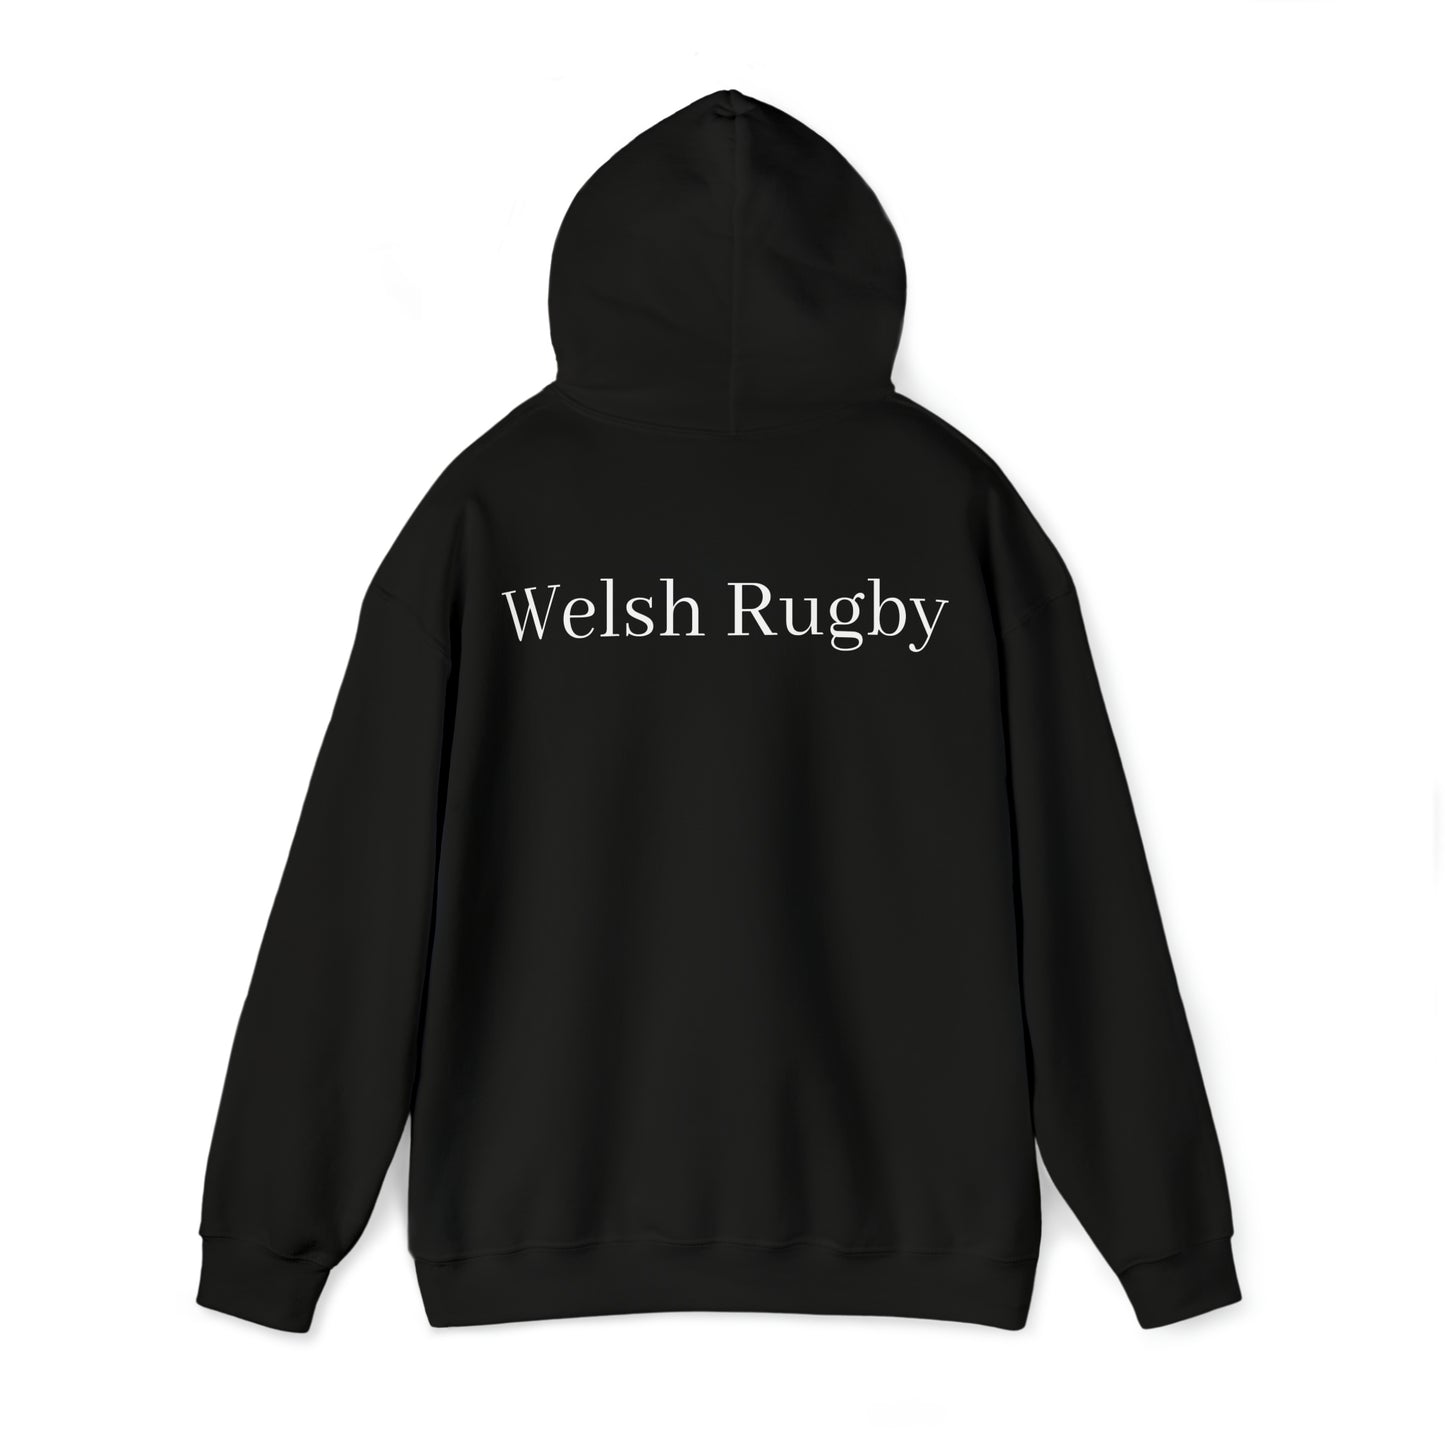 Welsh Dragon - dark hoodies